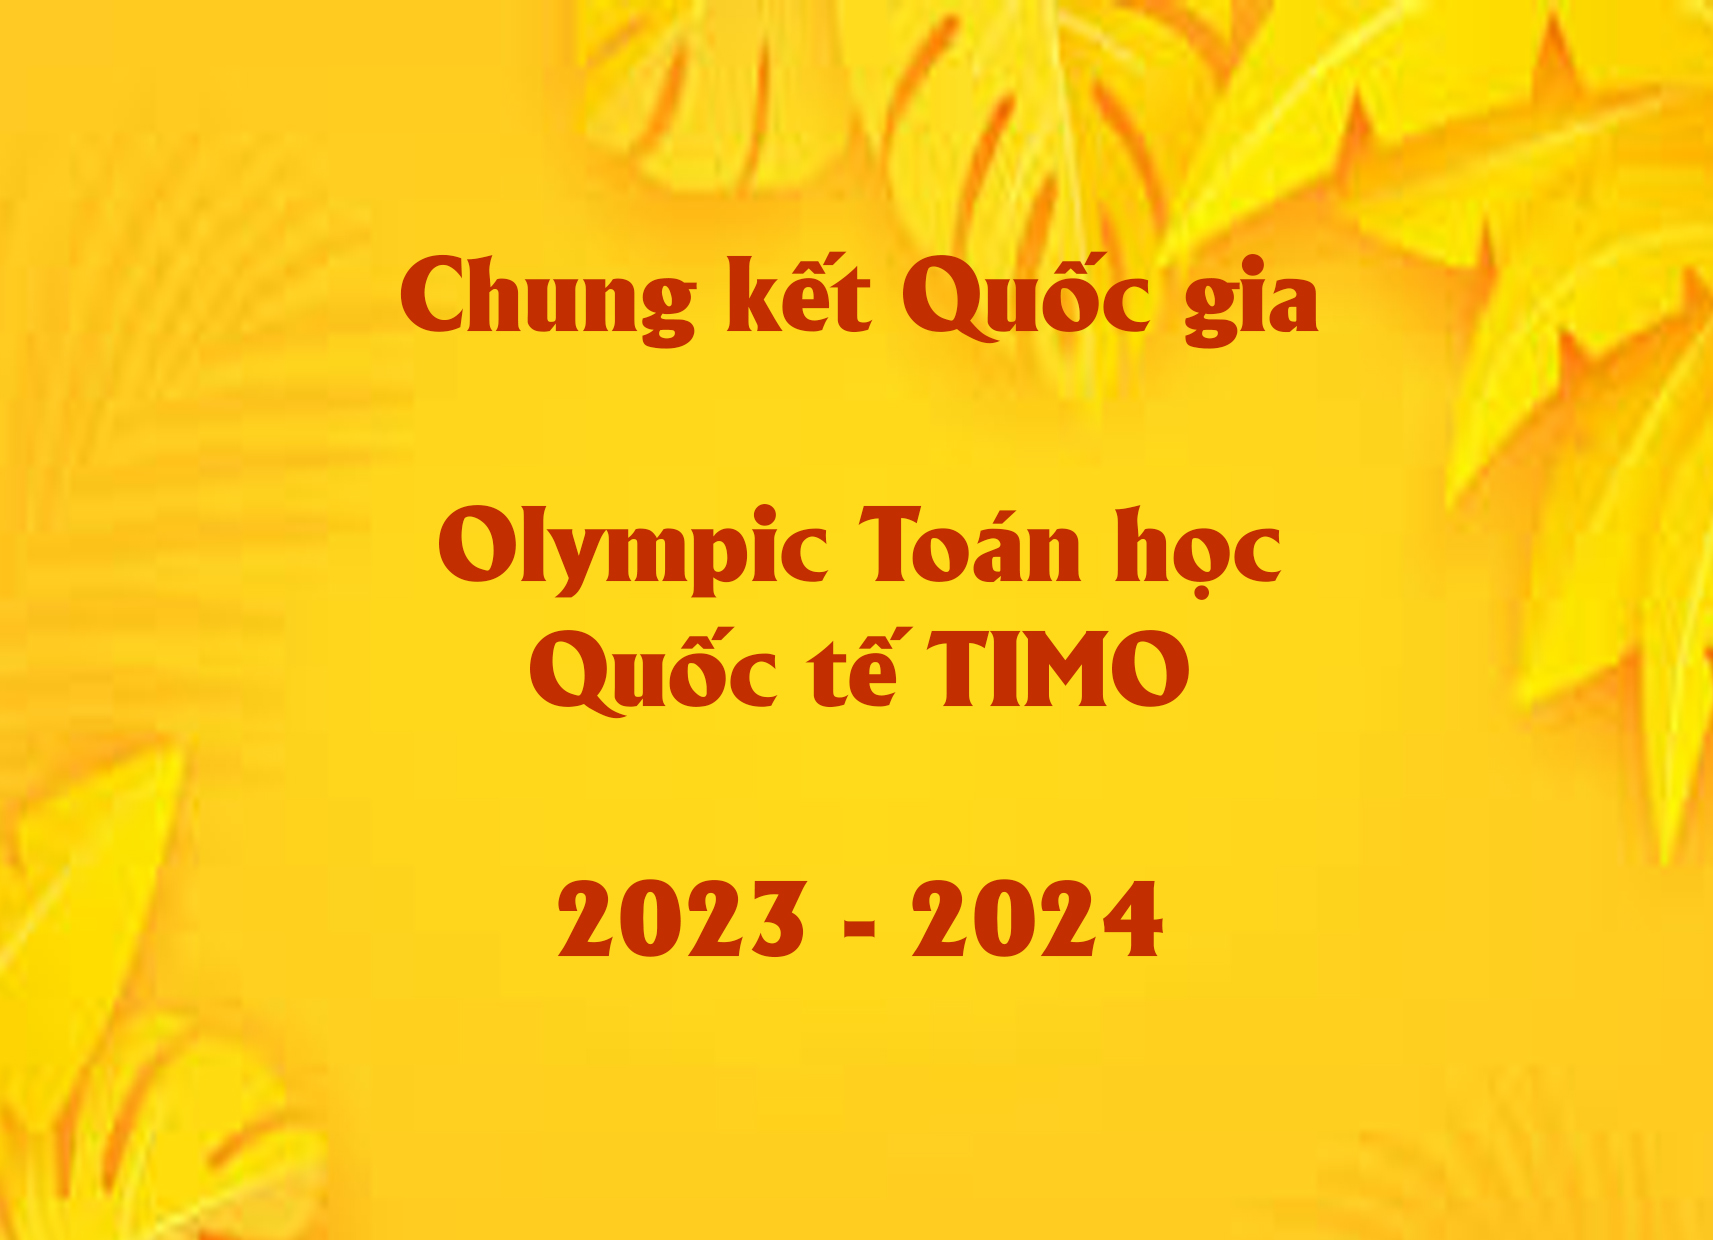 Chung kết Quốc gia Olympic Toán học Quốc tế TIMO 2023 - 2024